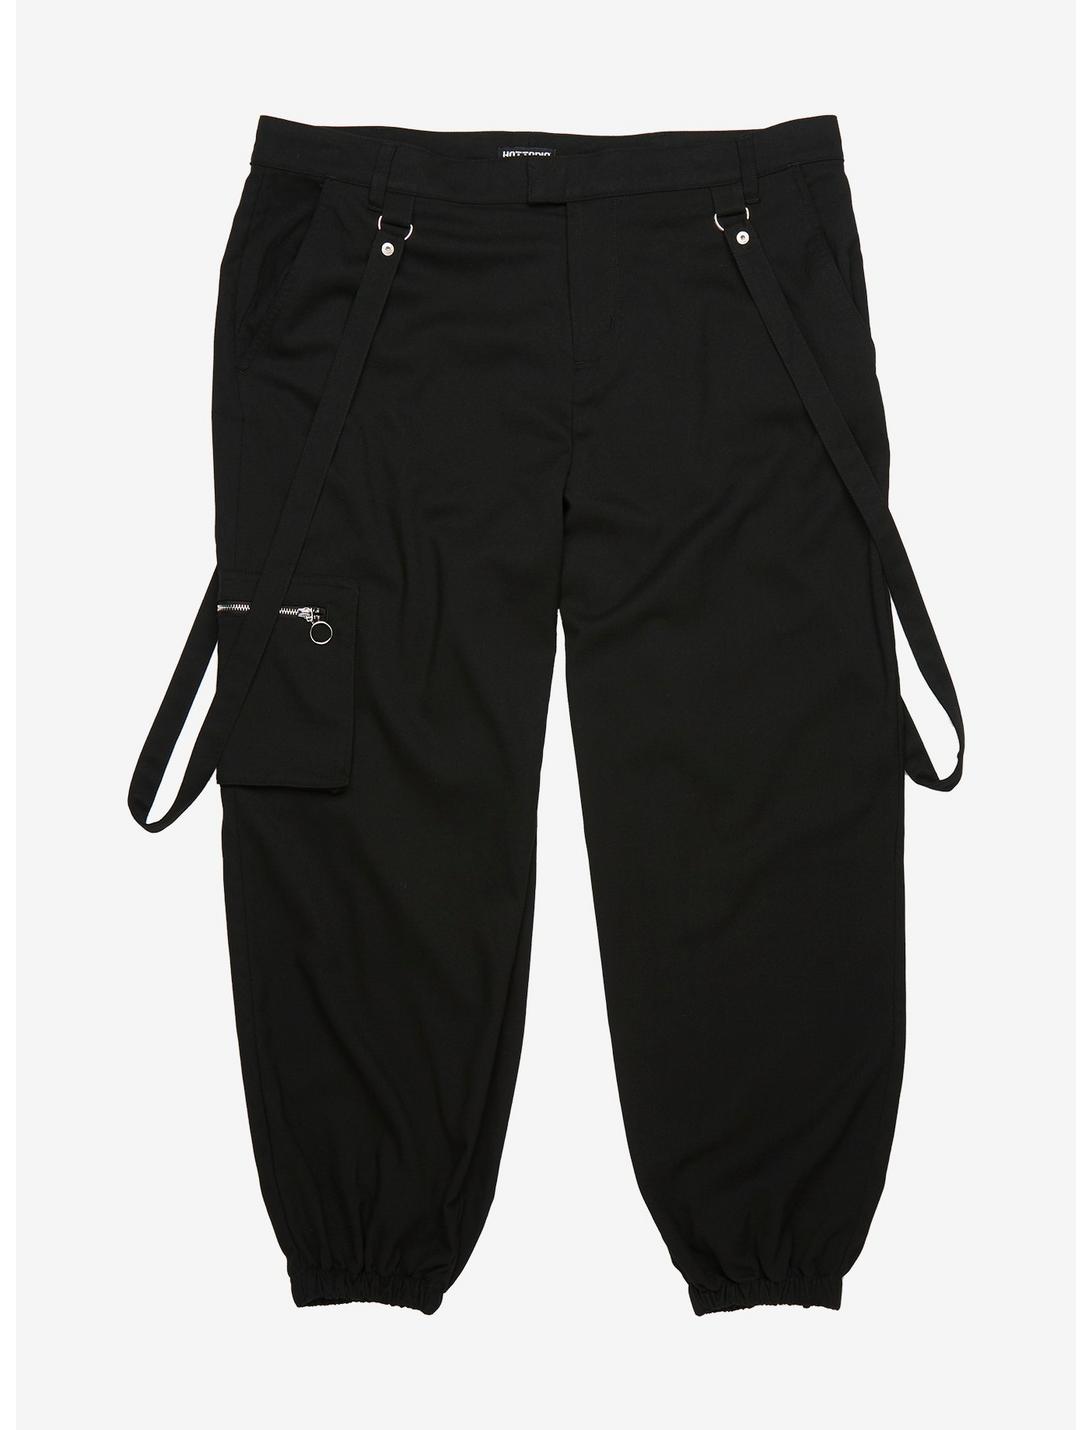 Black Strap Ultra Hi-Rise Jogger Pants Plus Size, BLACK, hi-res